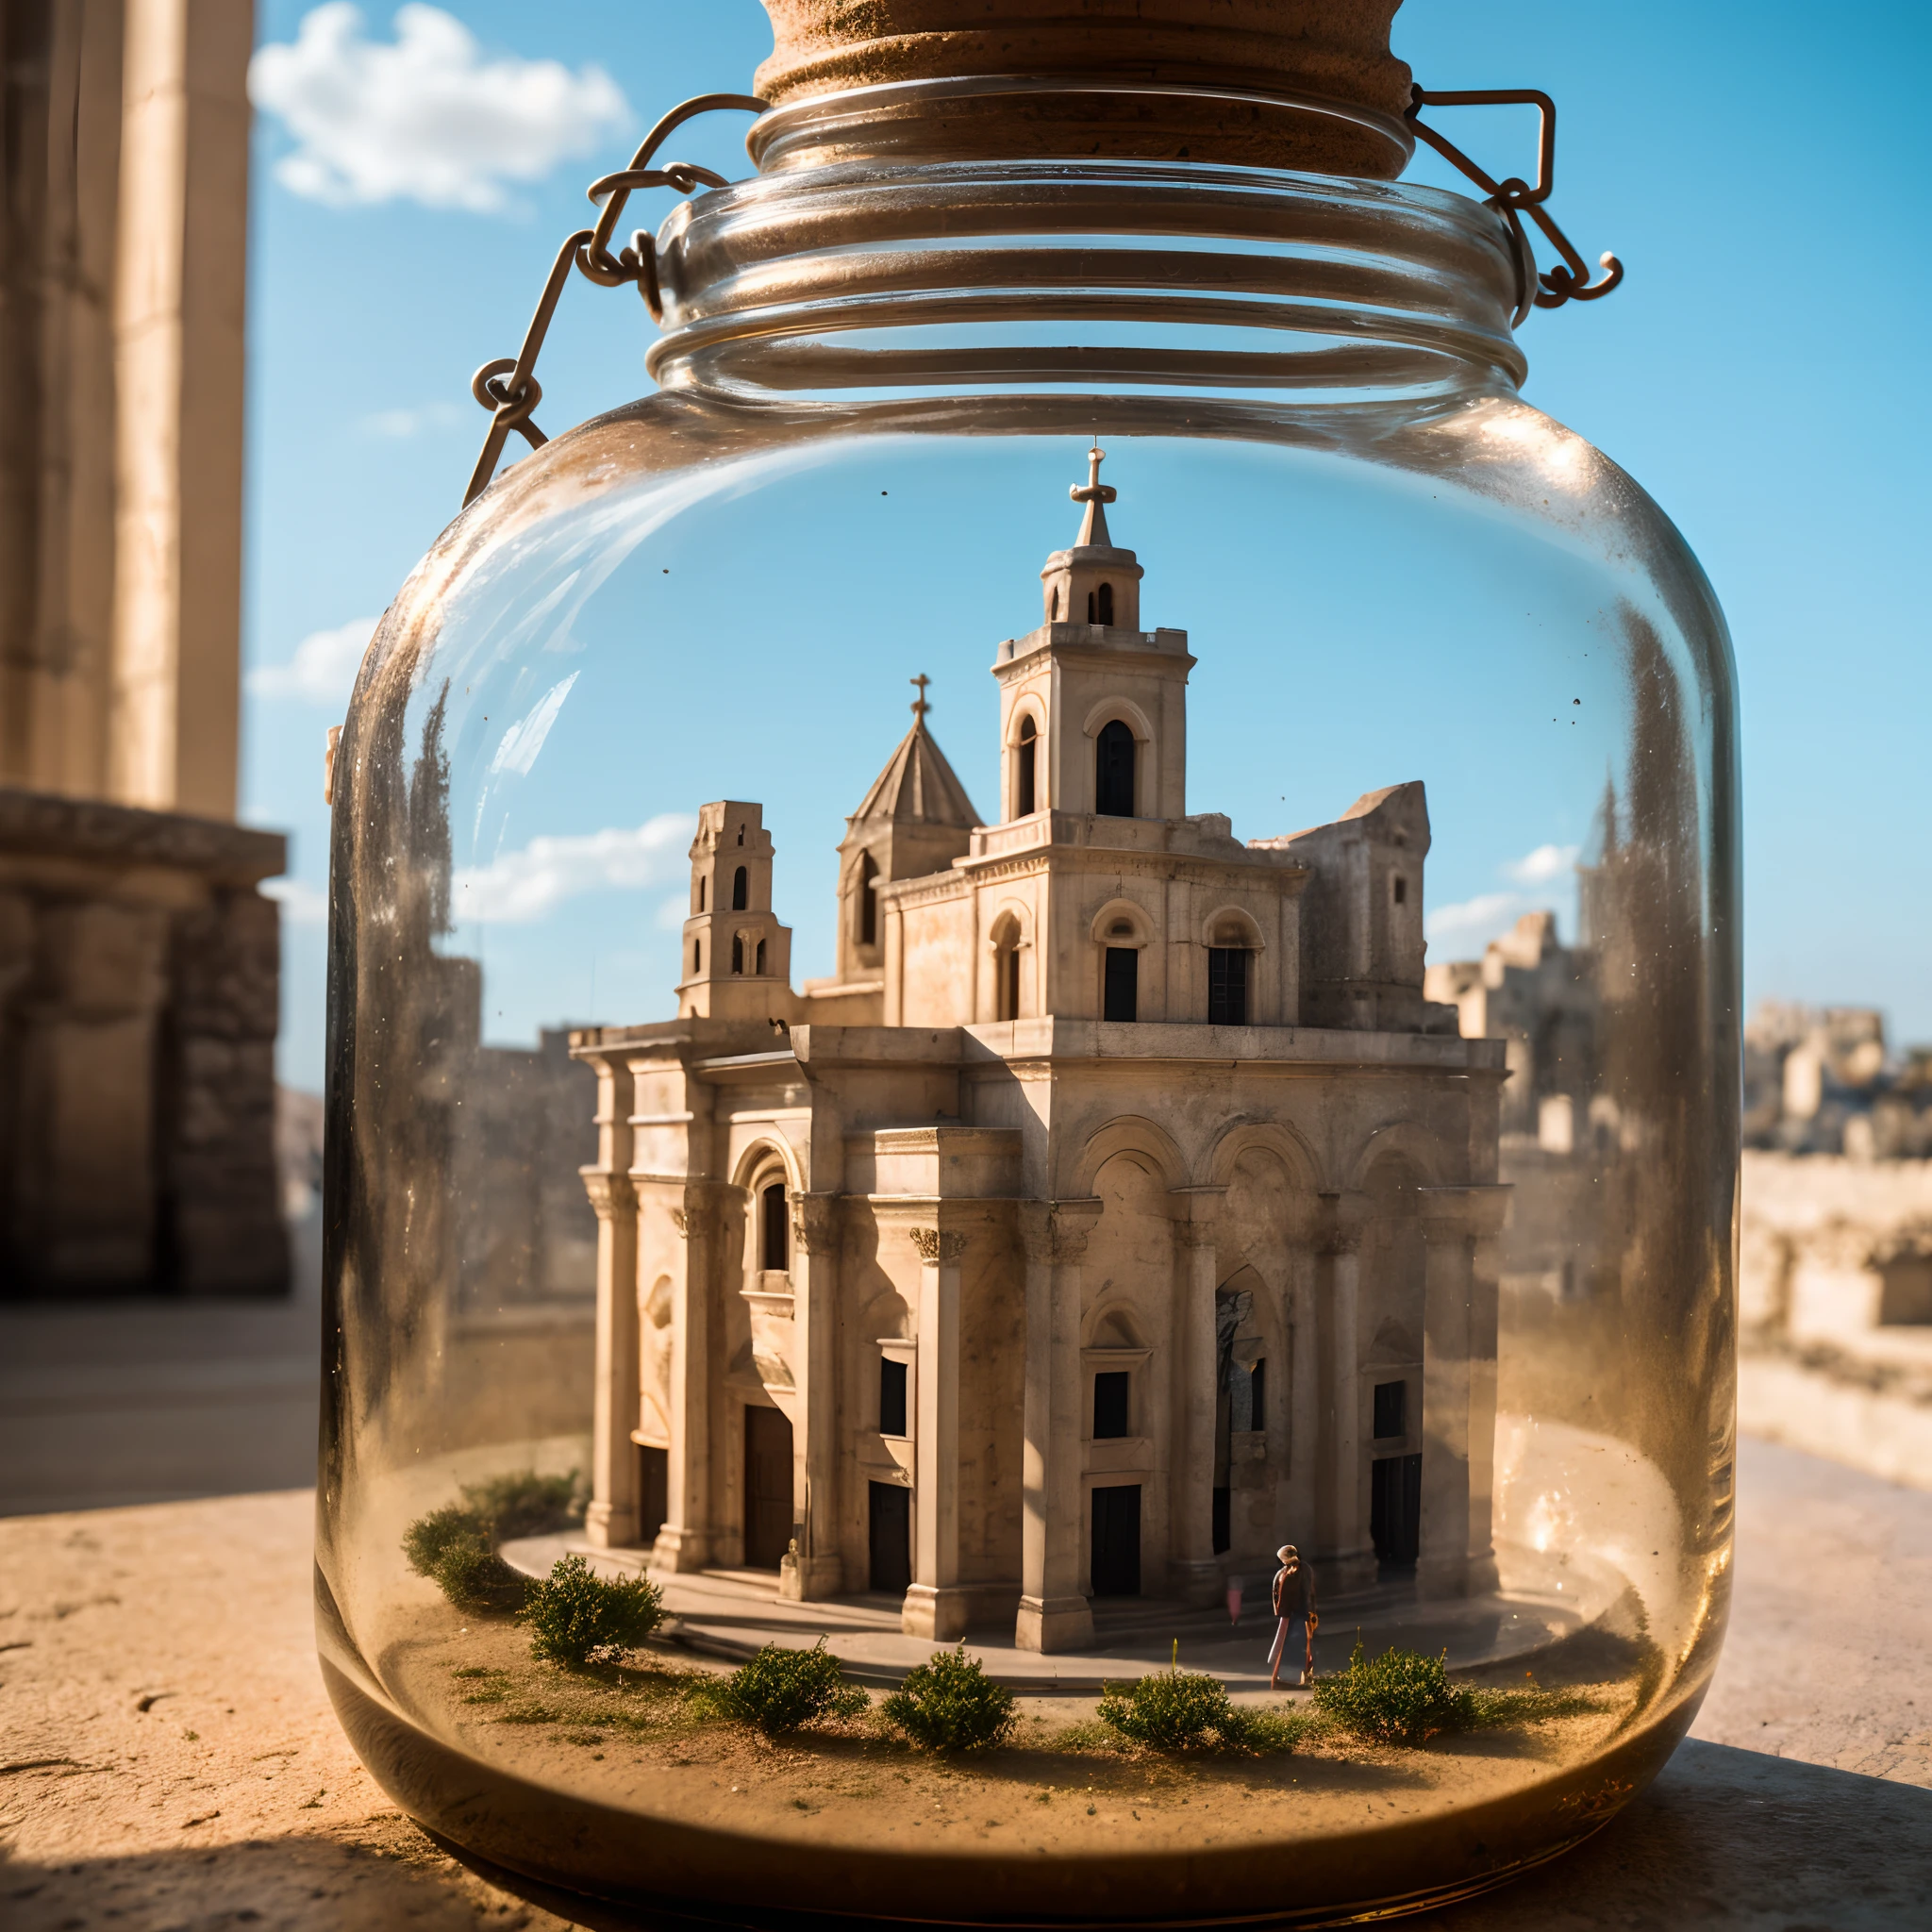 马泰拉大教堂，钟楼位于带盖方形玻璃罐内, 摆放在窗台上, 极其详细, 8千, 末世朋克风格, 缩影, 特写微距摄影